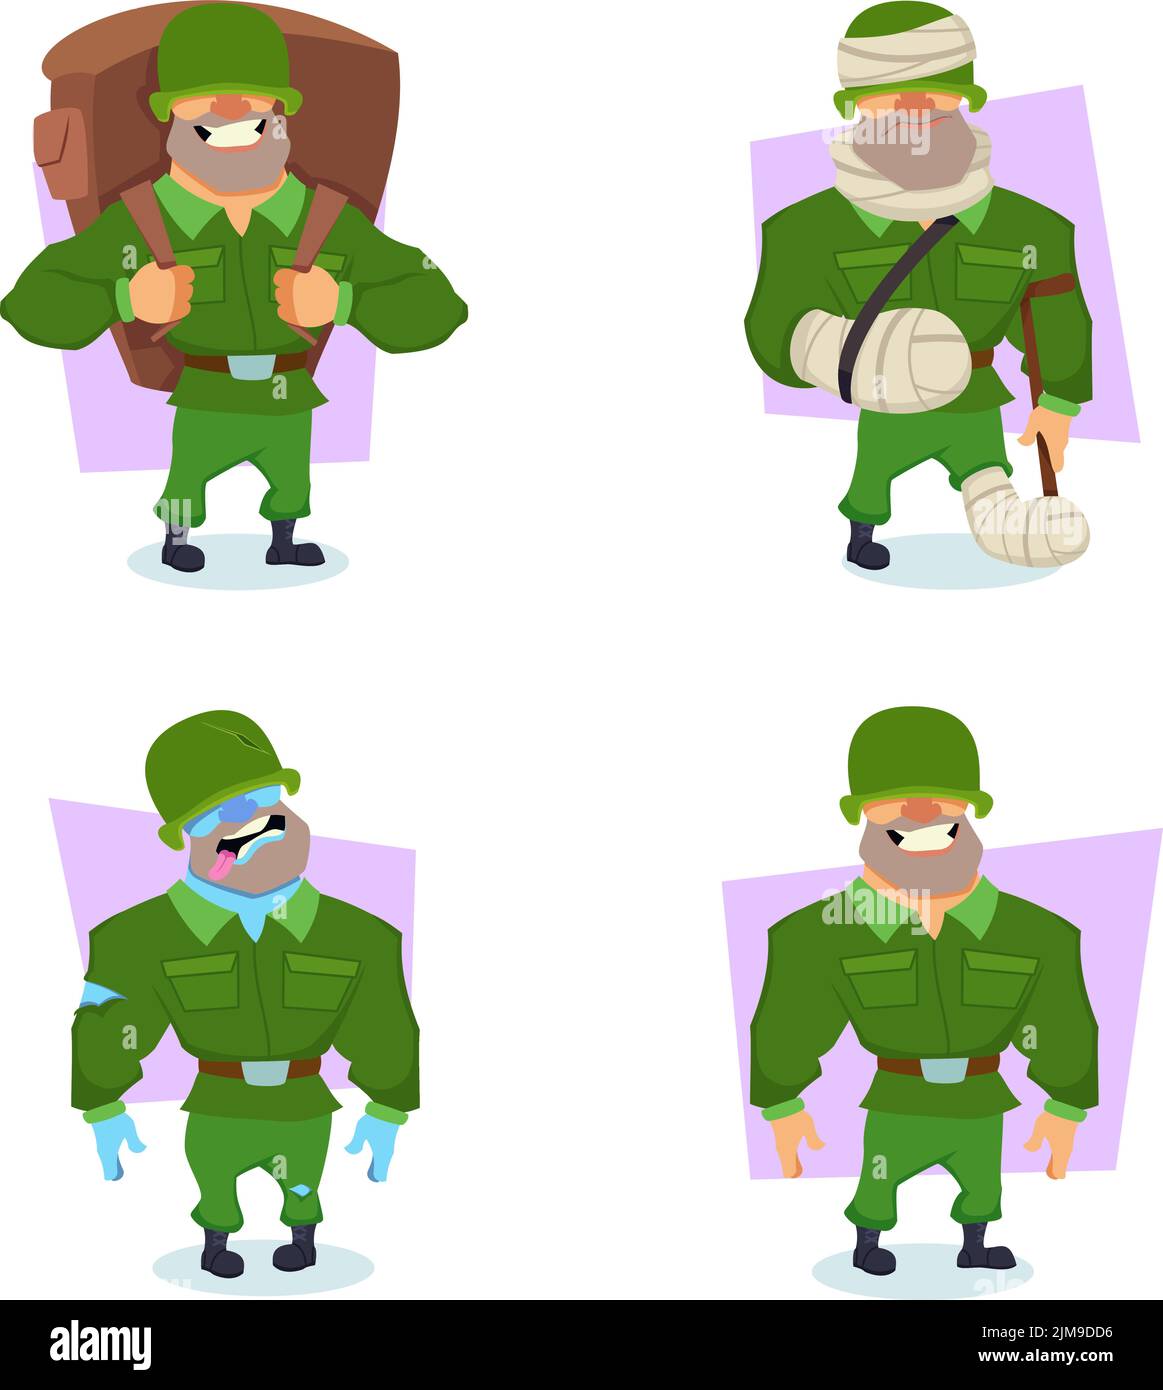 Ensemble de personnage de soldat de dessin animé avec sac à dos, debout avec la béquille, exprimant différentes émotions Illustration de Vecteur